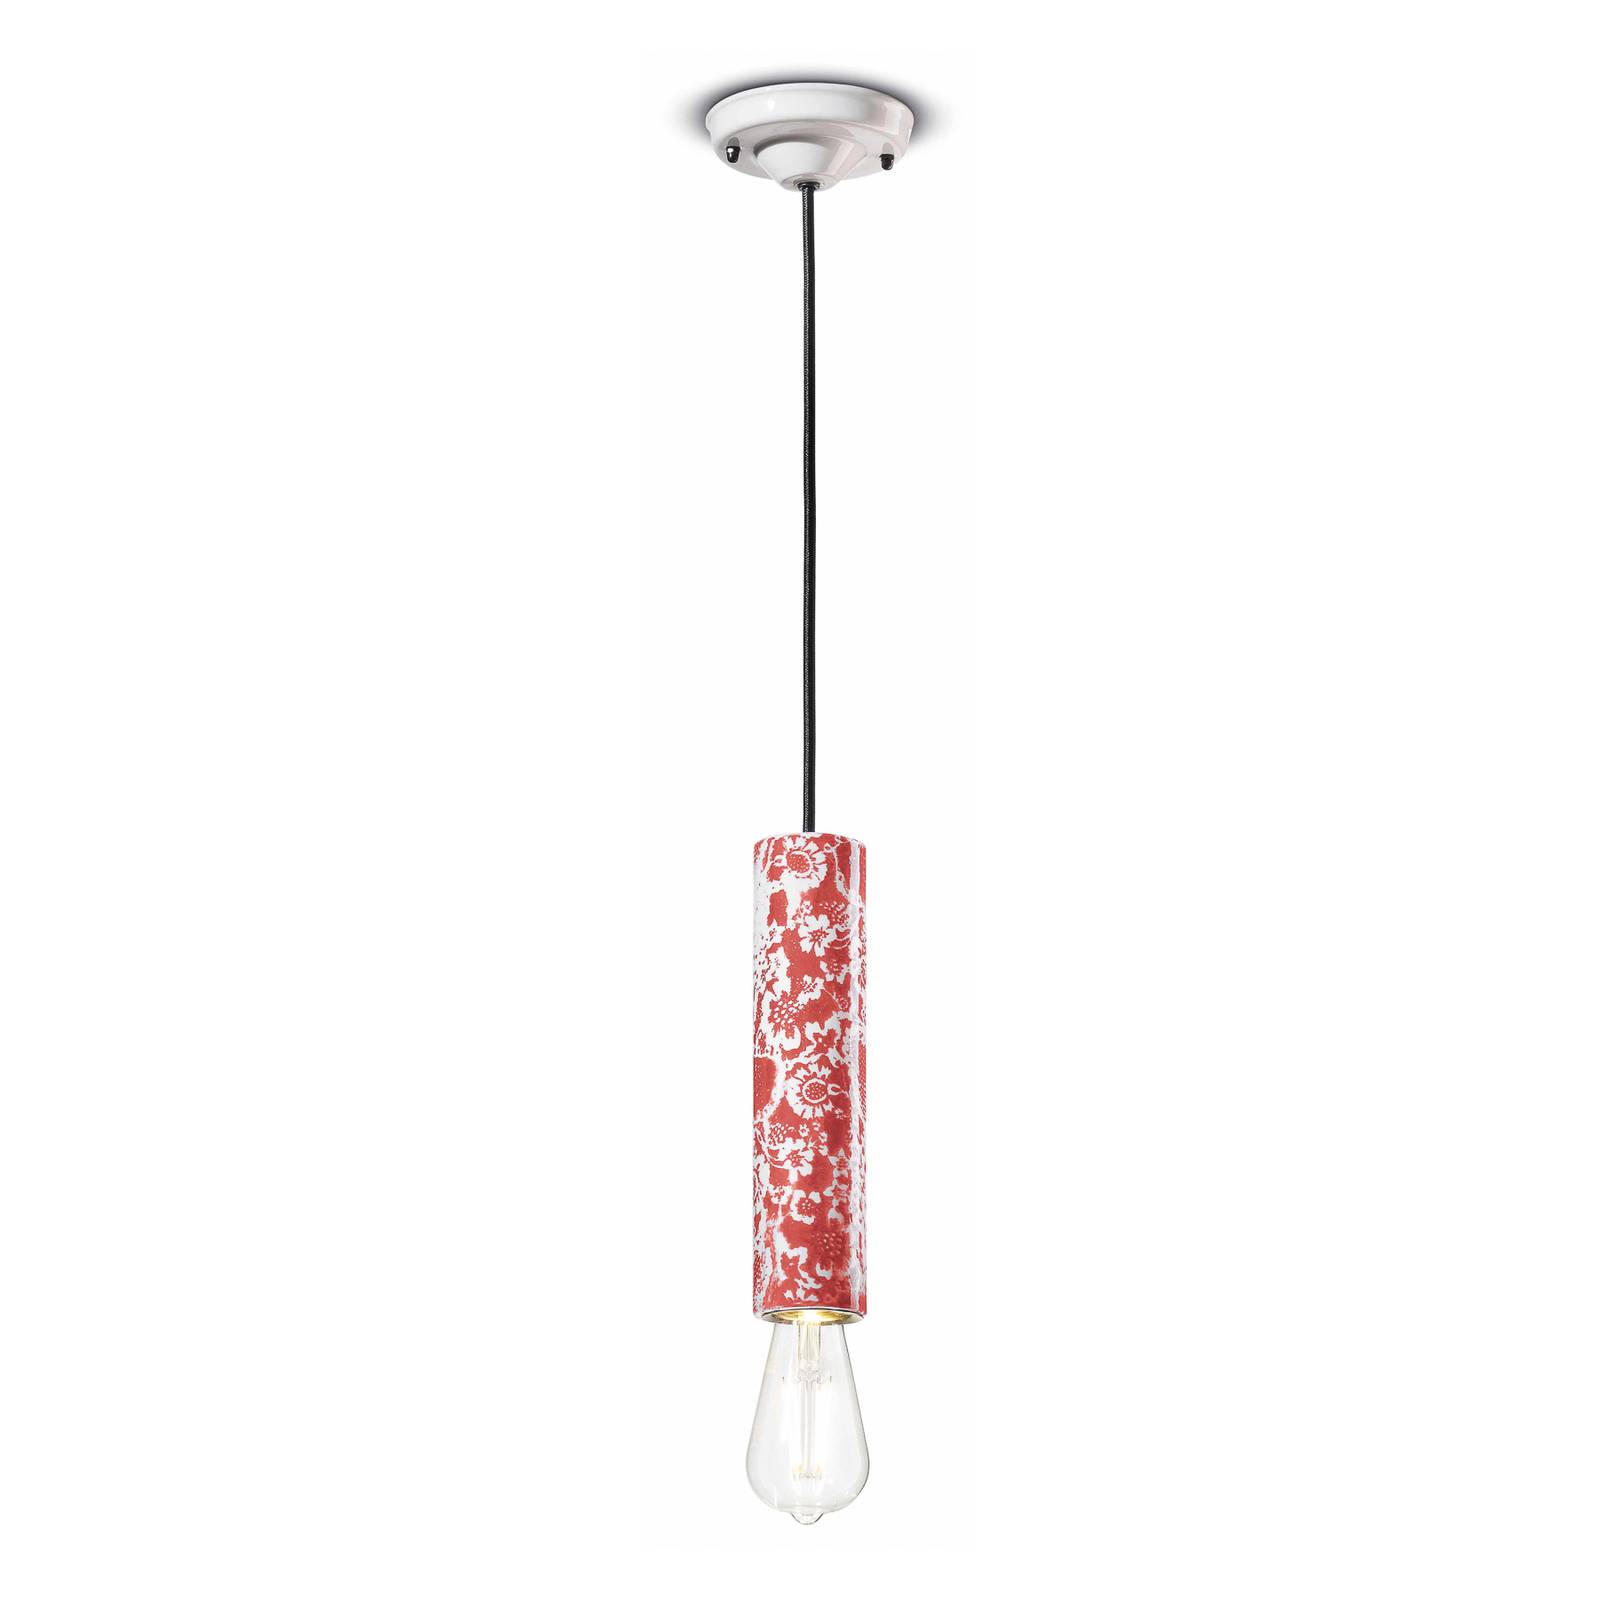 Függő lámpa PI virágmintás, Ø 5,5 cm piros/fehér